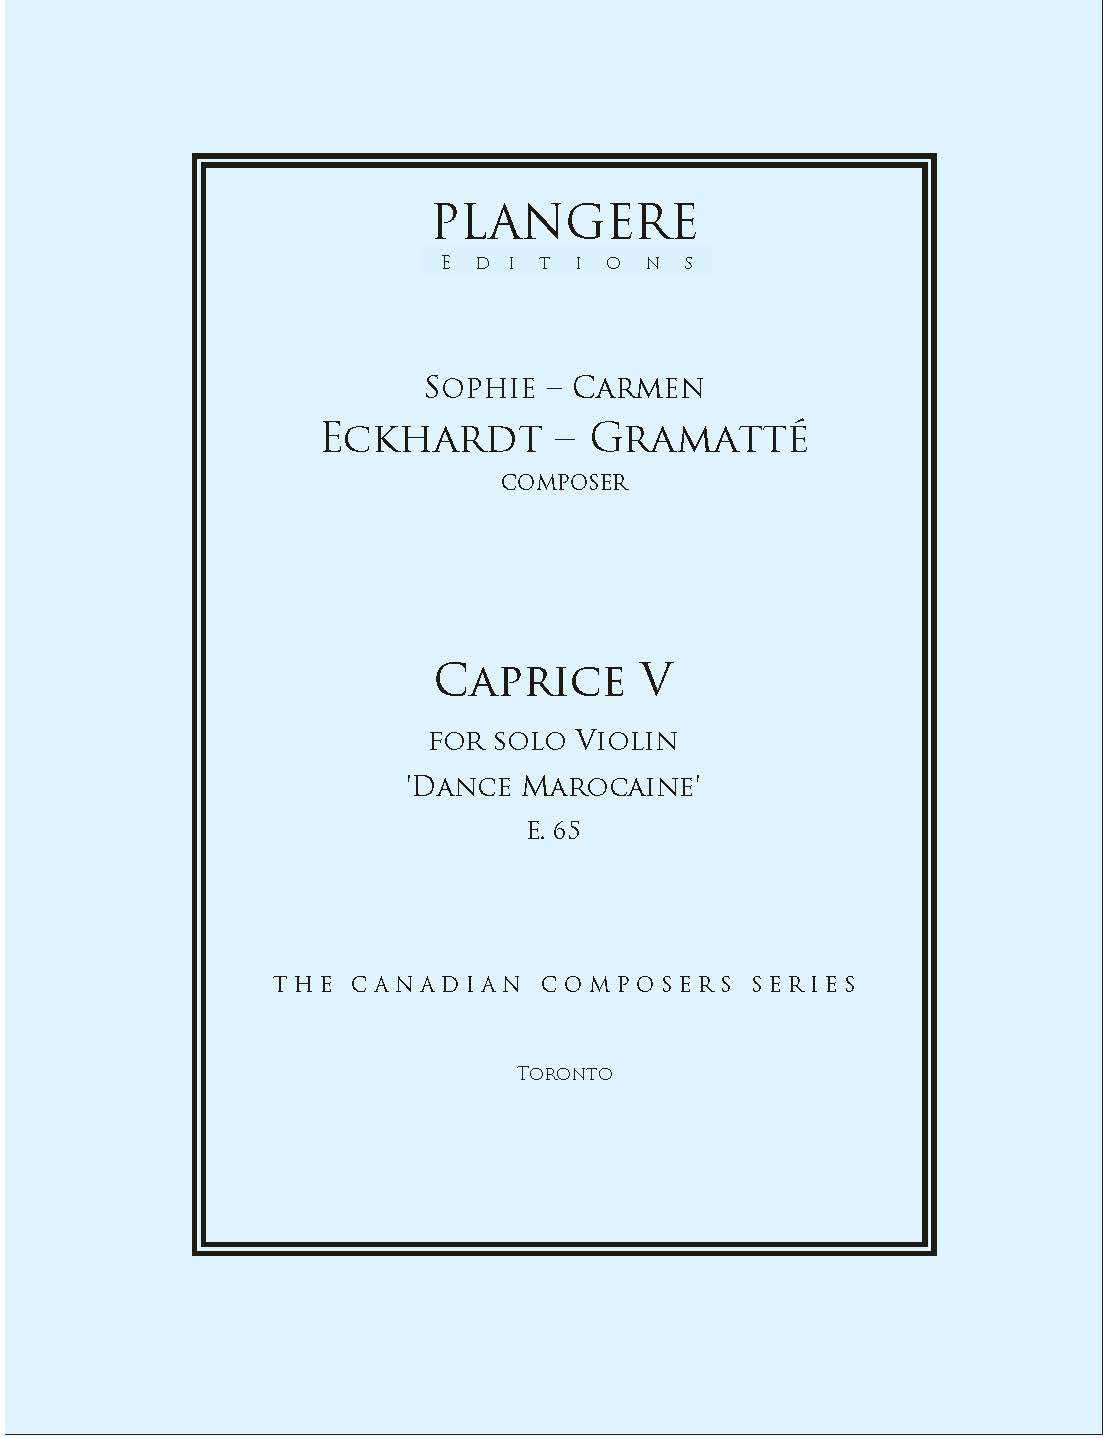 Caprice V for solo Violin  E. 64